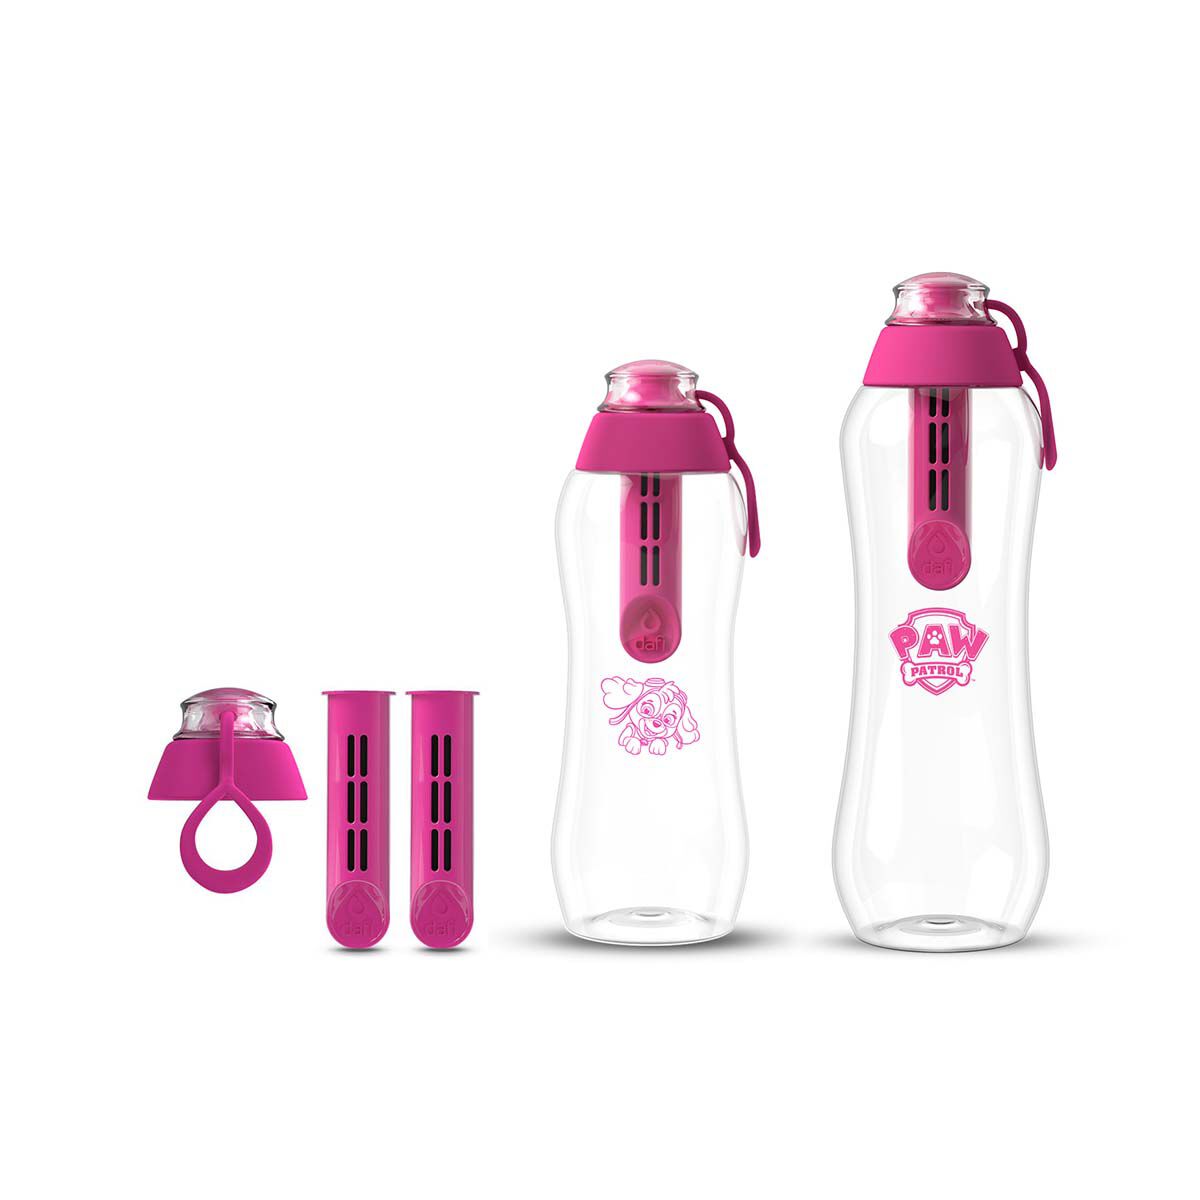 Набор из бутылок с угольным фильтром Dafi Psi Patrol/Soft, 5 предметов, розовый